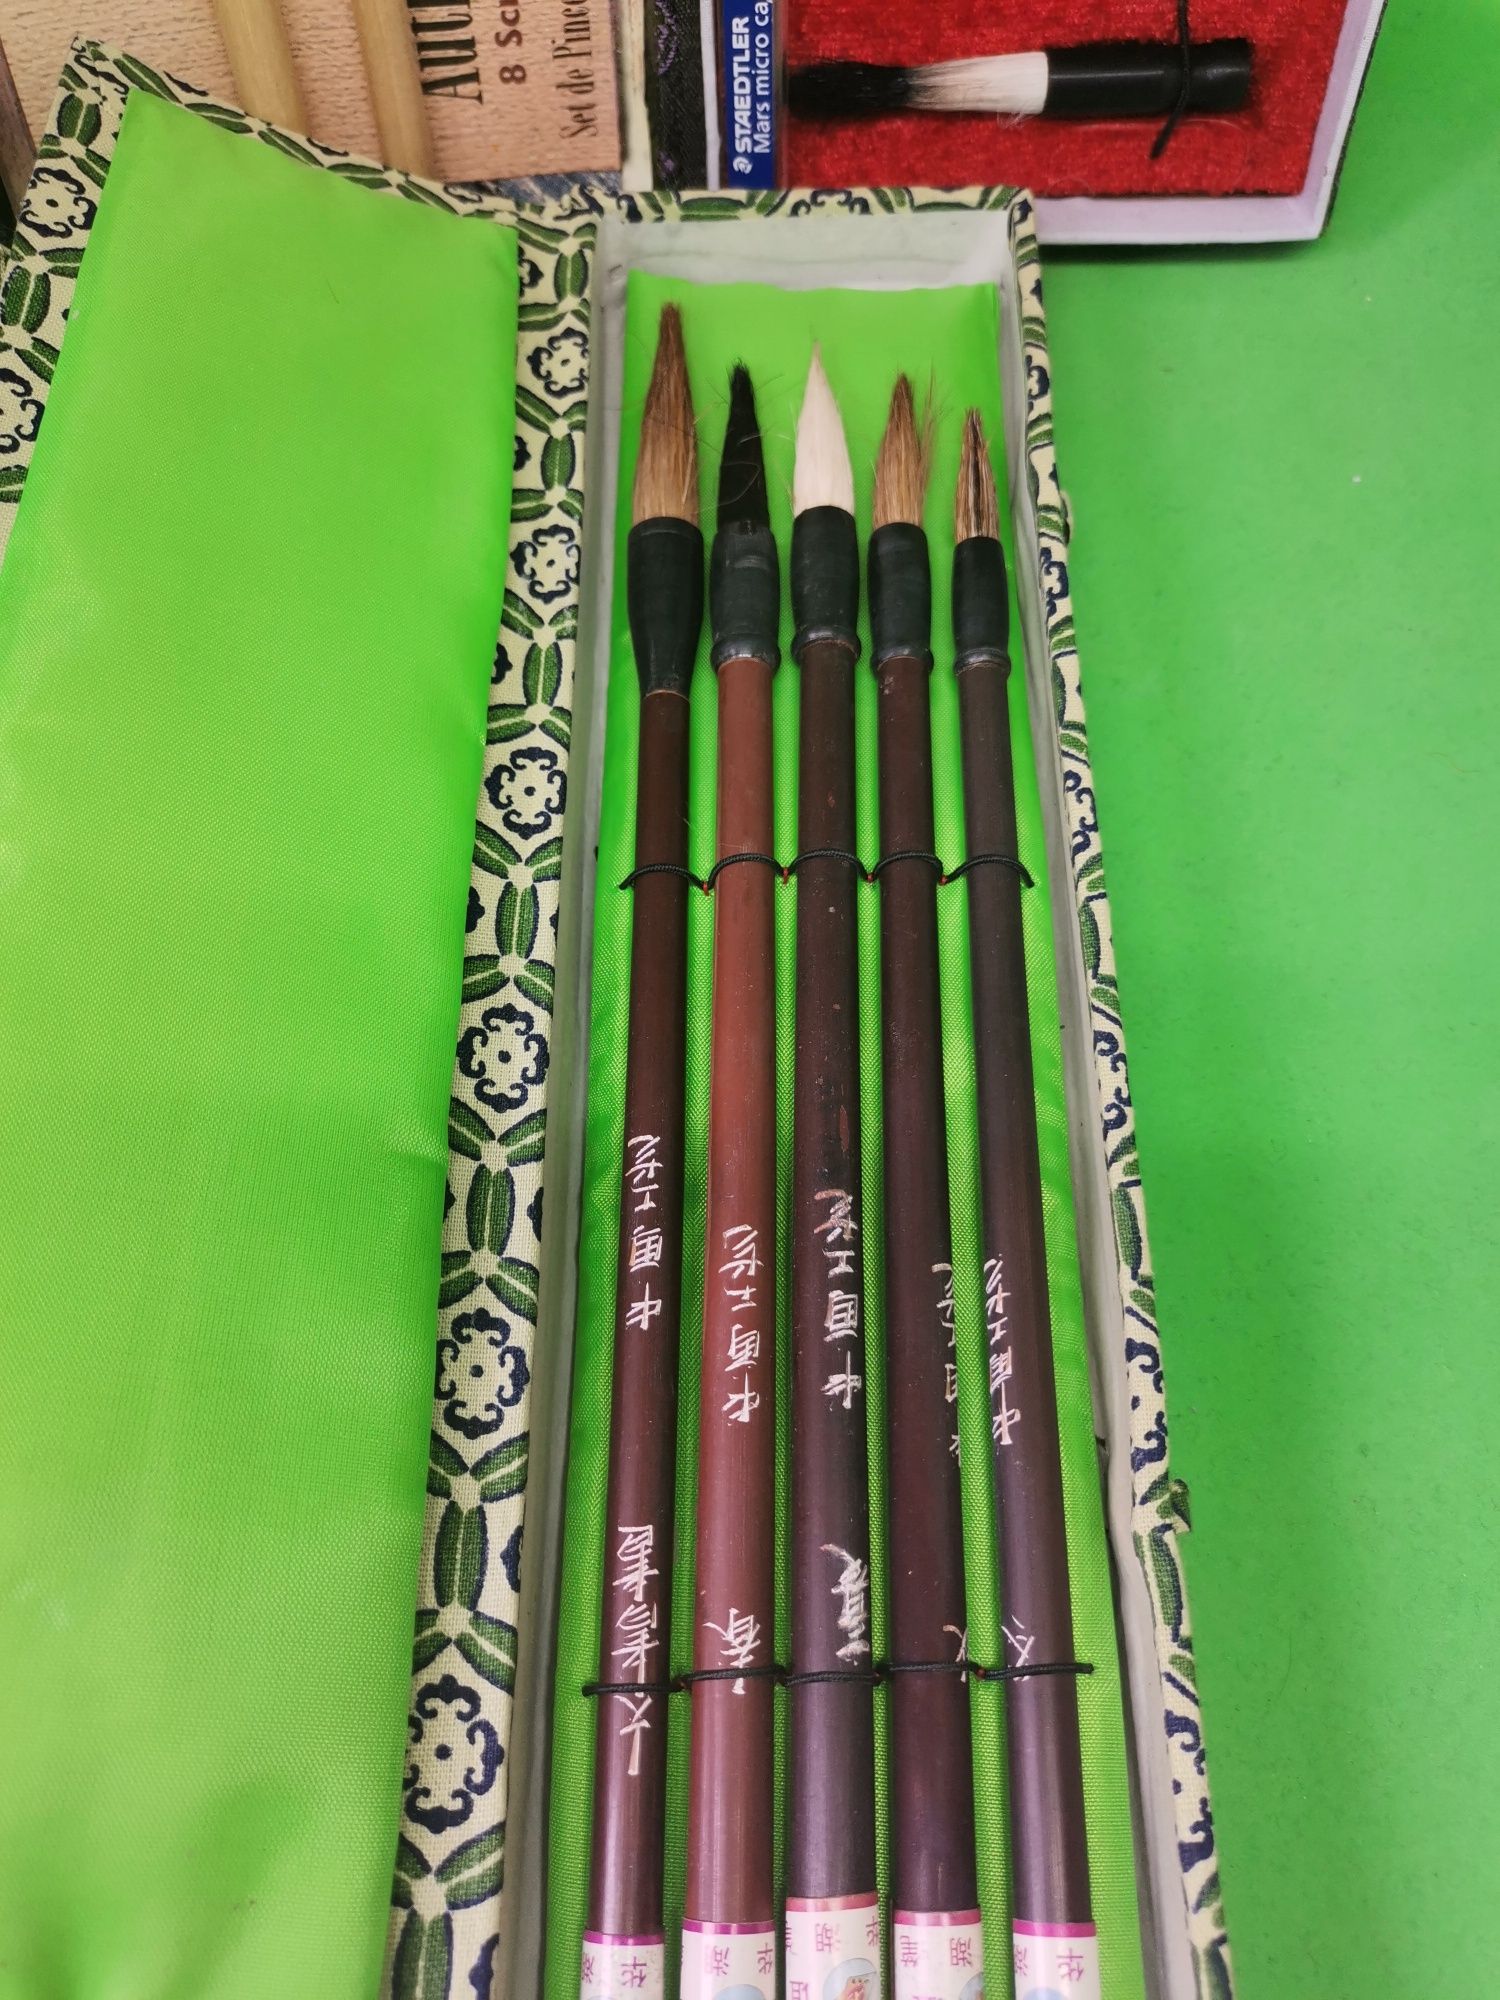 Seturi de pensule originale. Autentice și destul de rare.